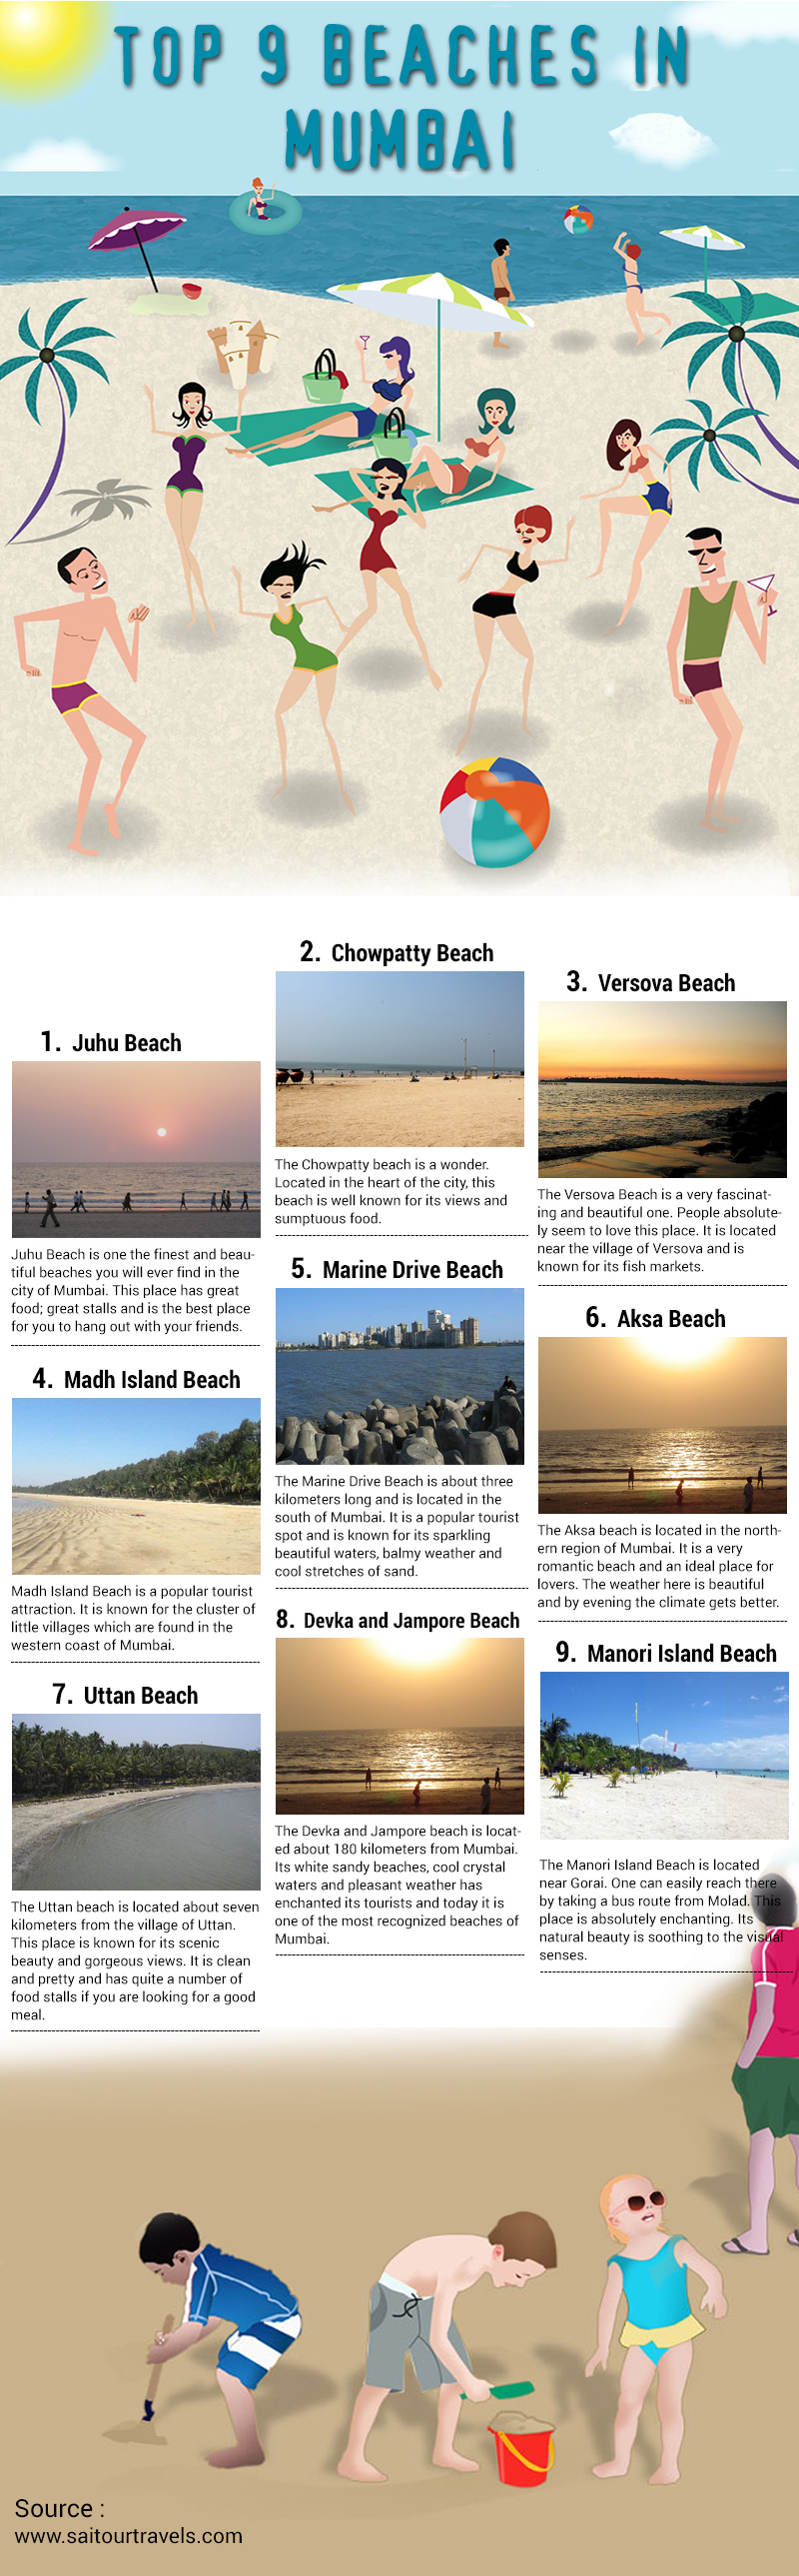 Top 9 Beaches in Mumbai